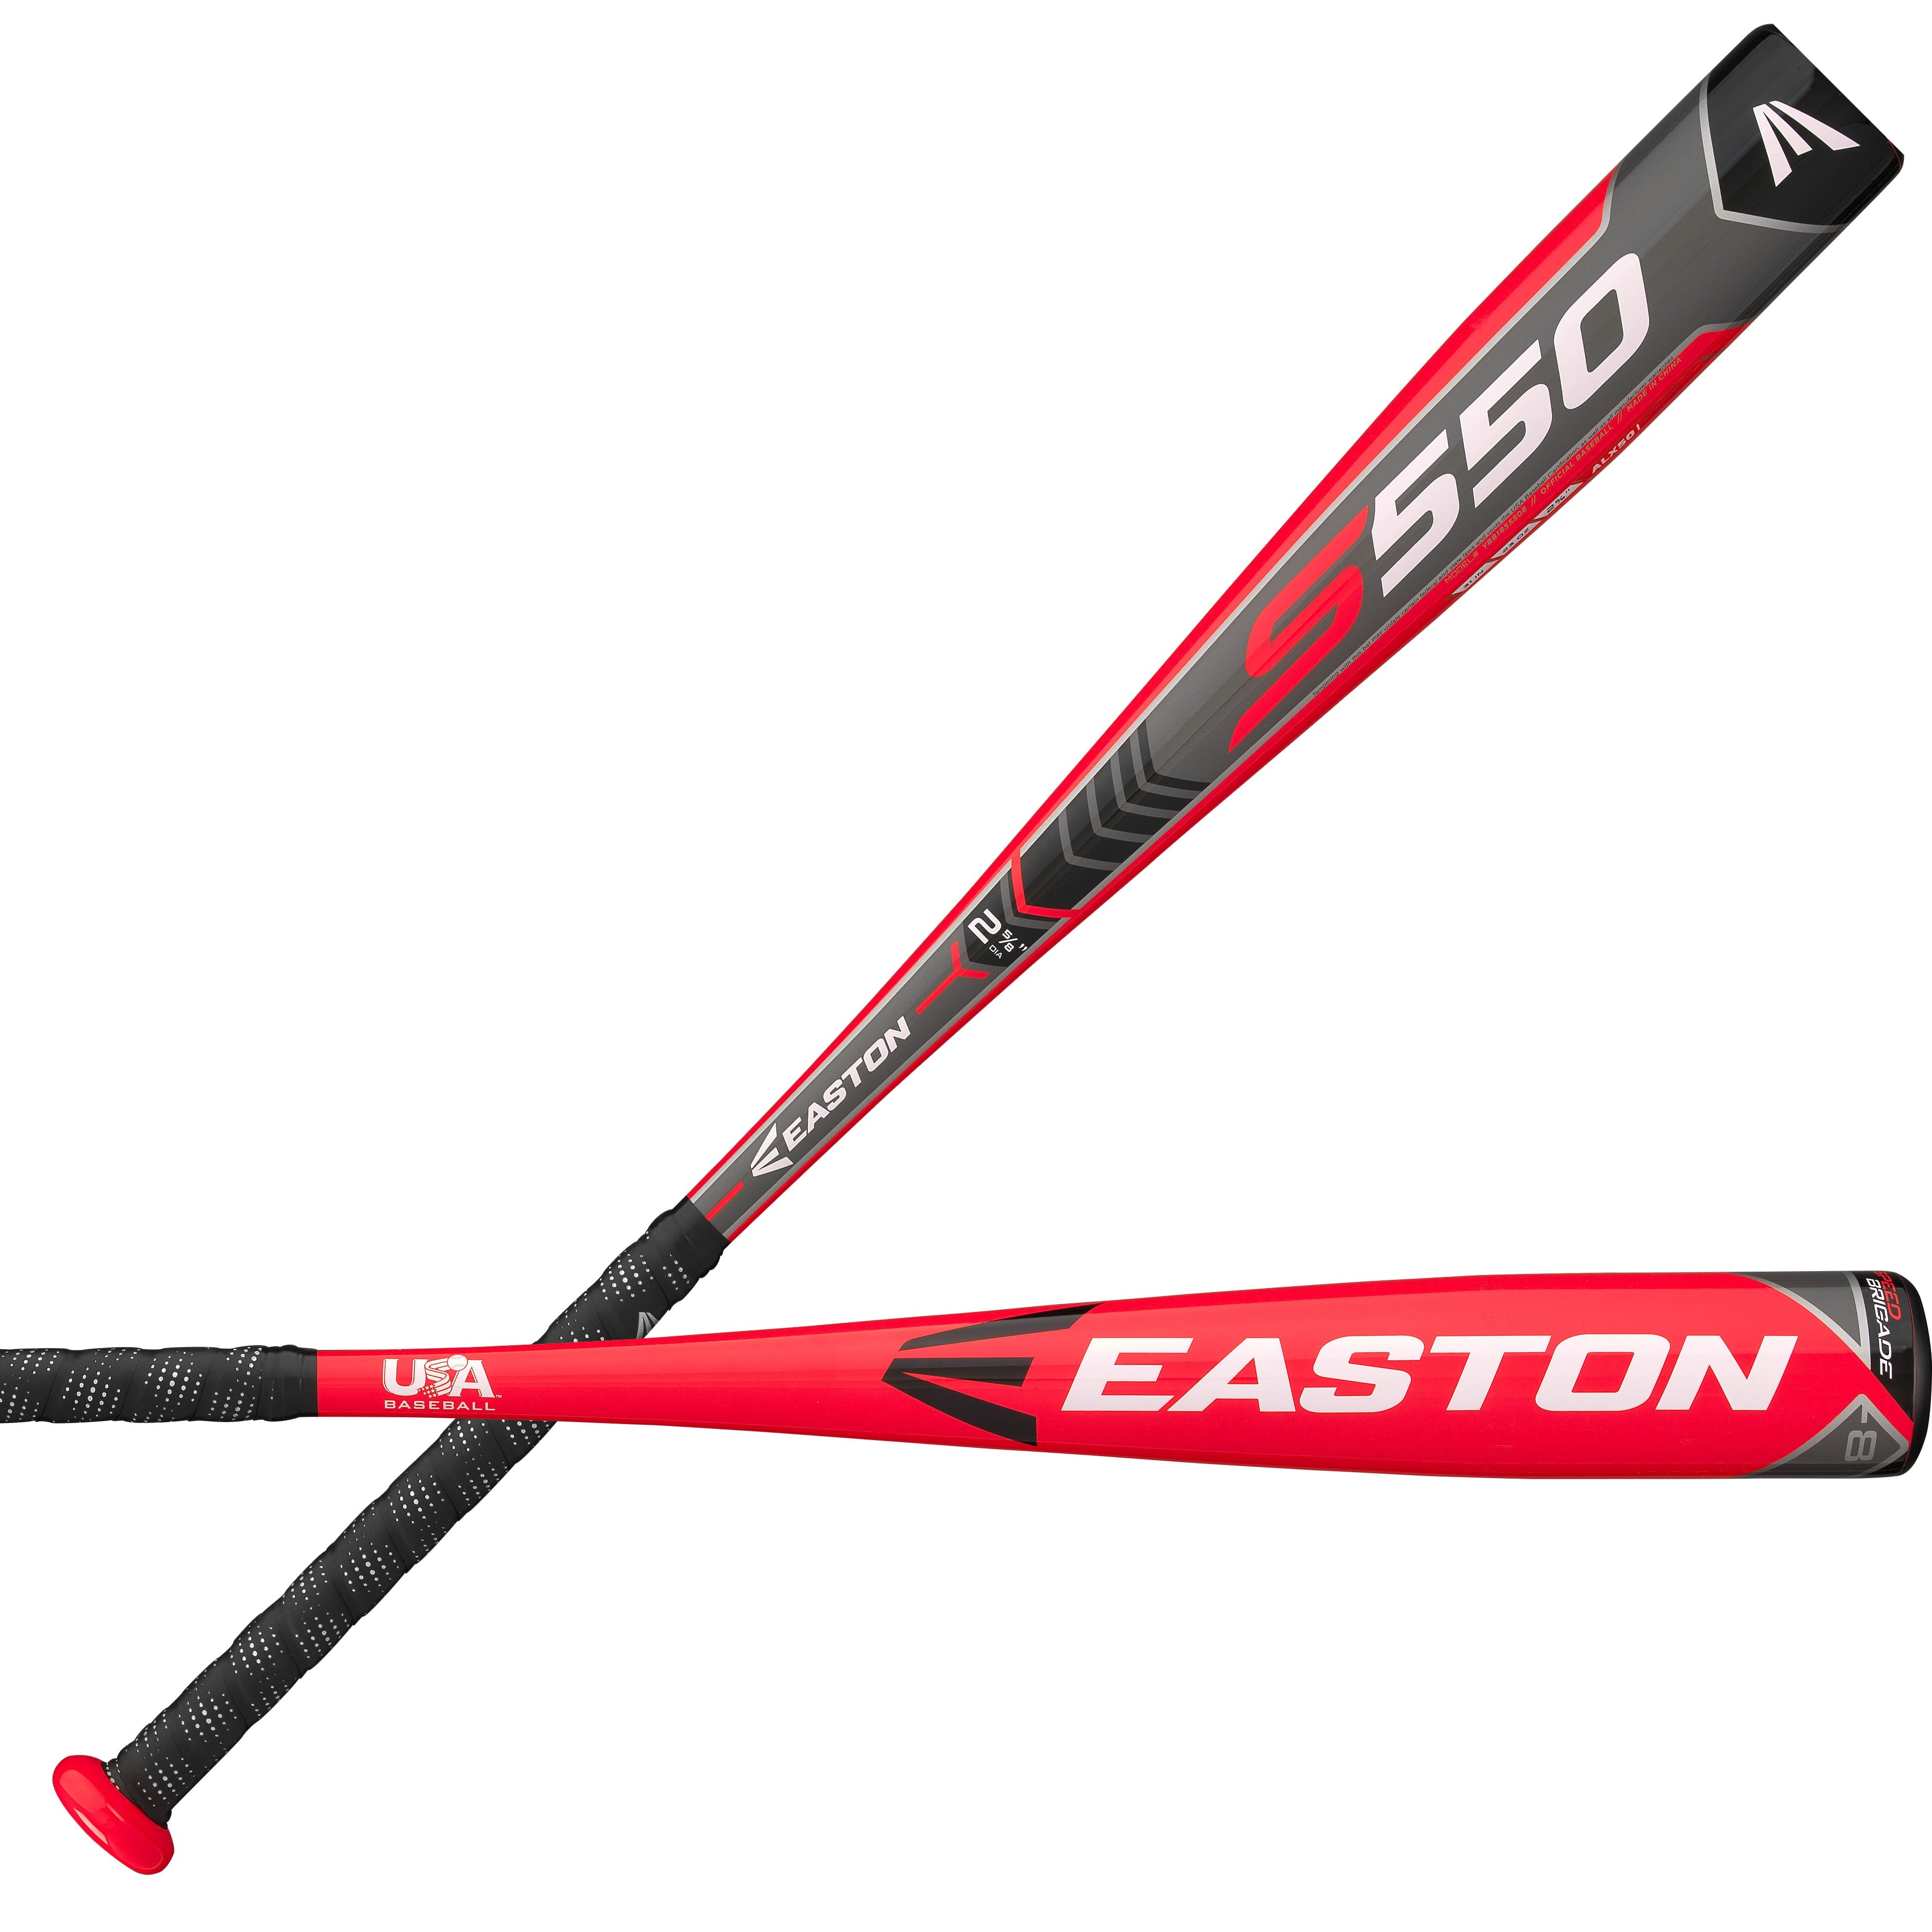 2018 Easton S550 USA Youth League Baseball Bat YBB18S5508 2 5/8 -8 